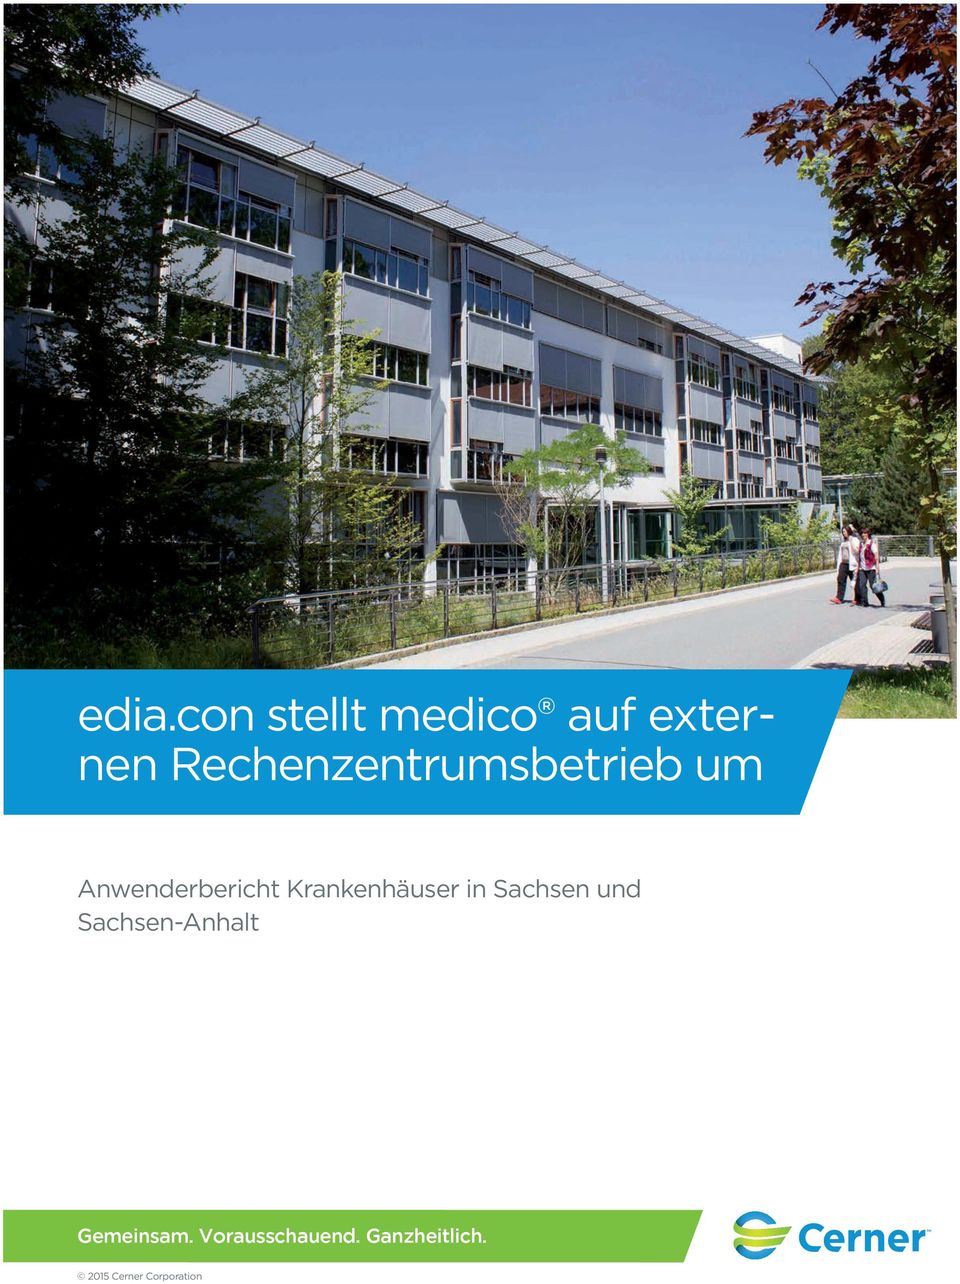 Krankenhäuser in Sachsen und Sachsen-Anhalt